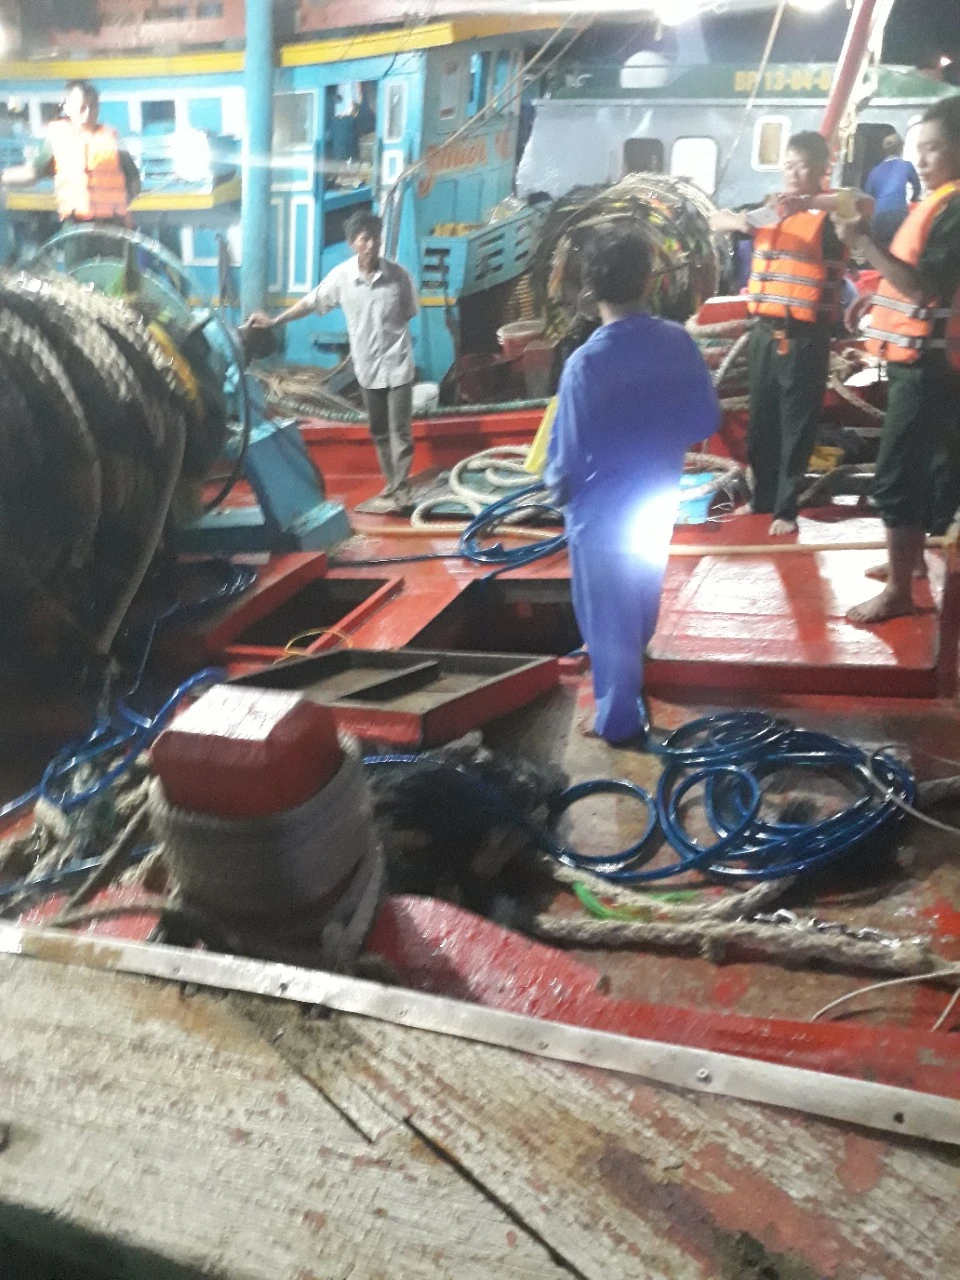 Ảnh: Lực lượng BĐBP tỉnh Bà Rịa – Vũng Tàu tiến hành kiểm tra trên 2 tàu cá chở dầu lậu.